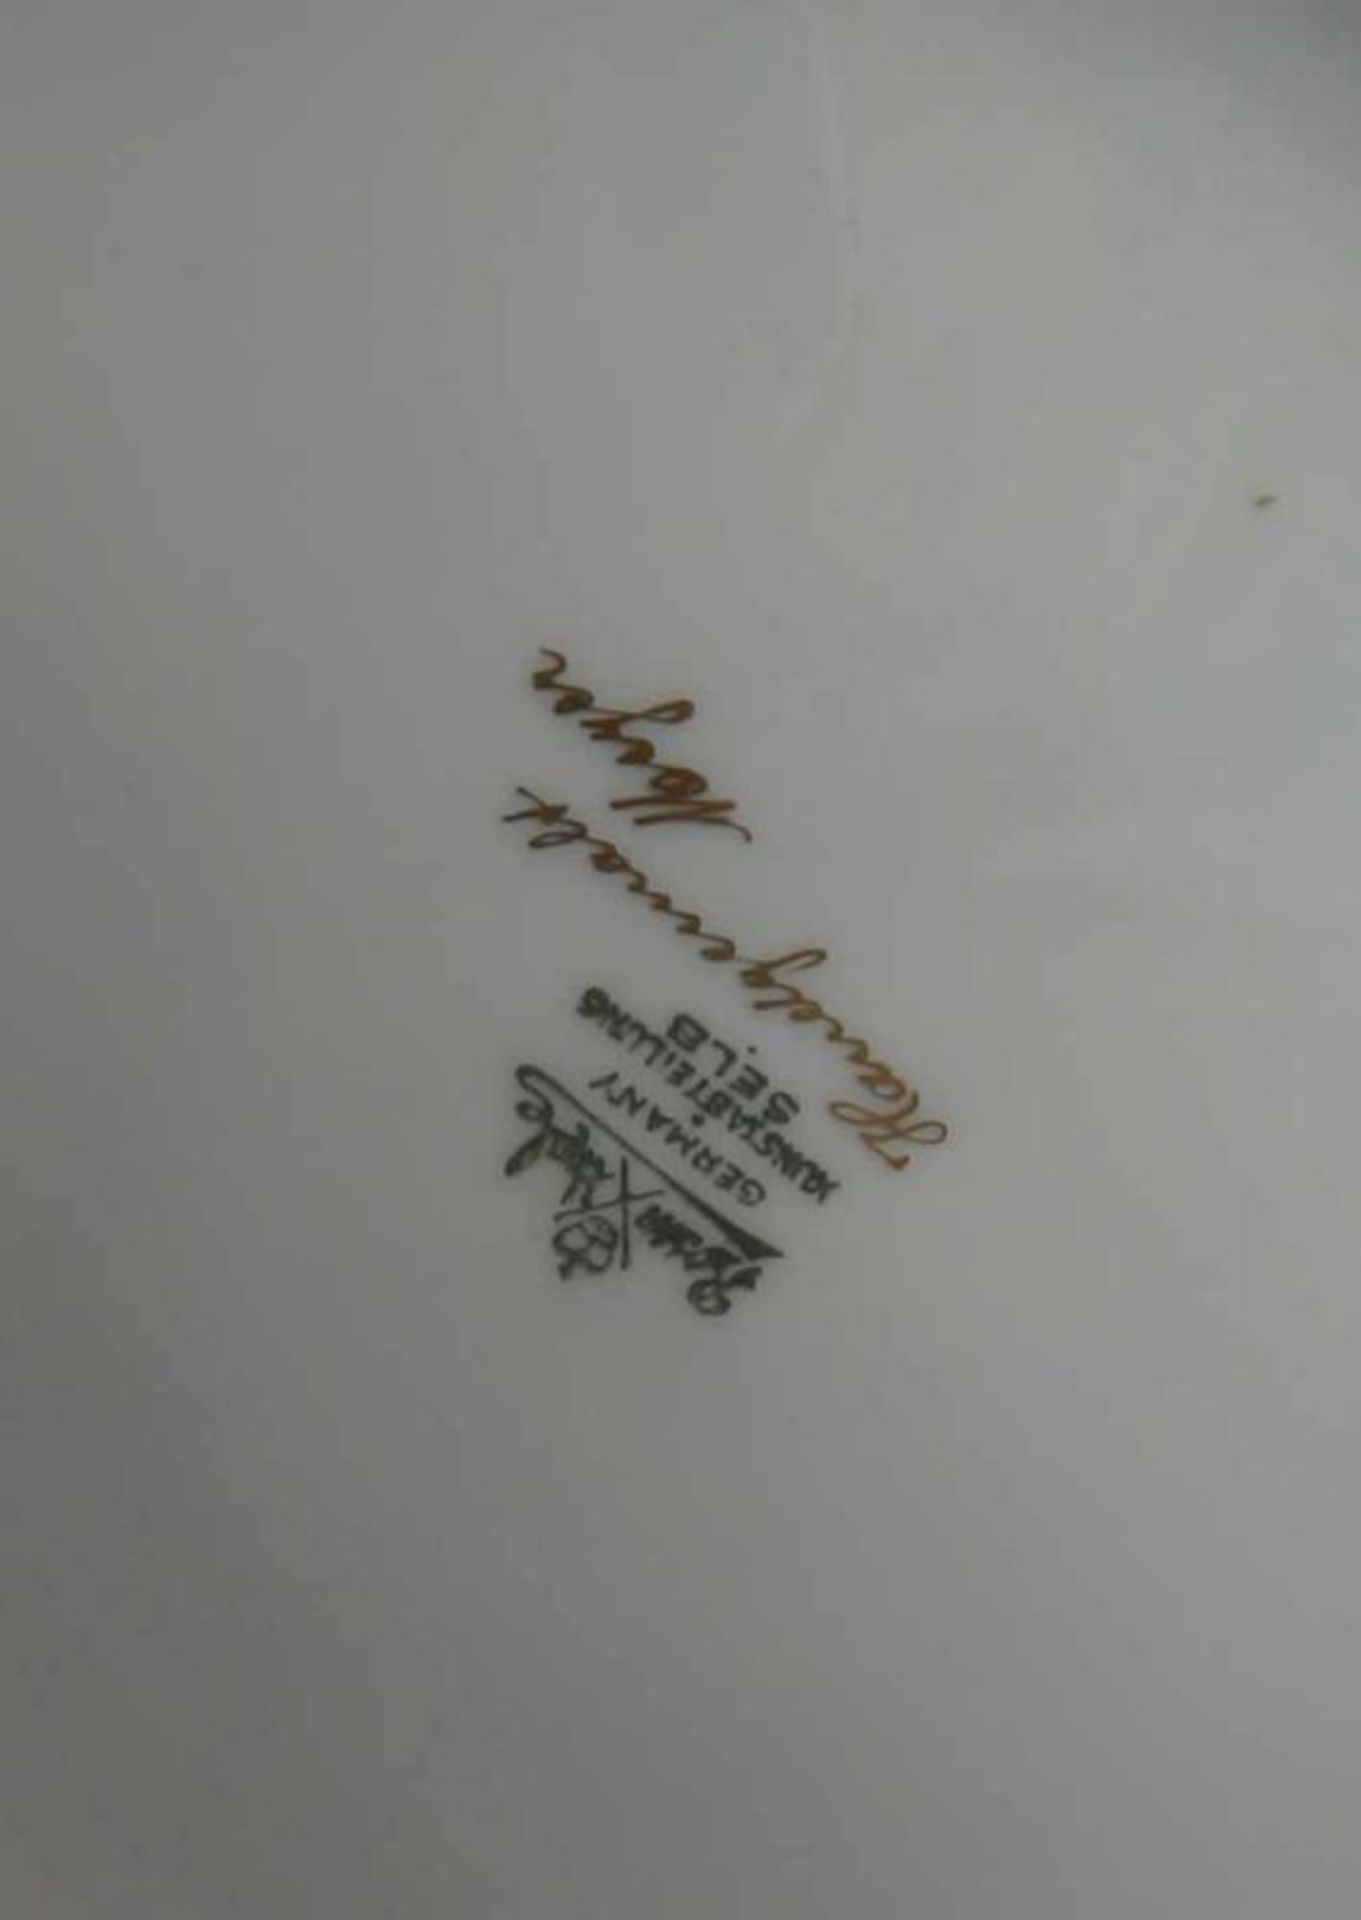 Grosse Rosenthal Deckelamphore, weisser Scherben, bunt bemalt, gemarktet, H 51 cm 20.17 % buyer's - Bild 5 aus 6